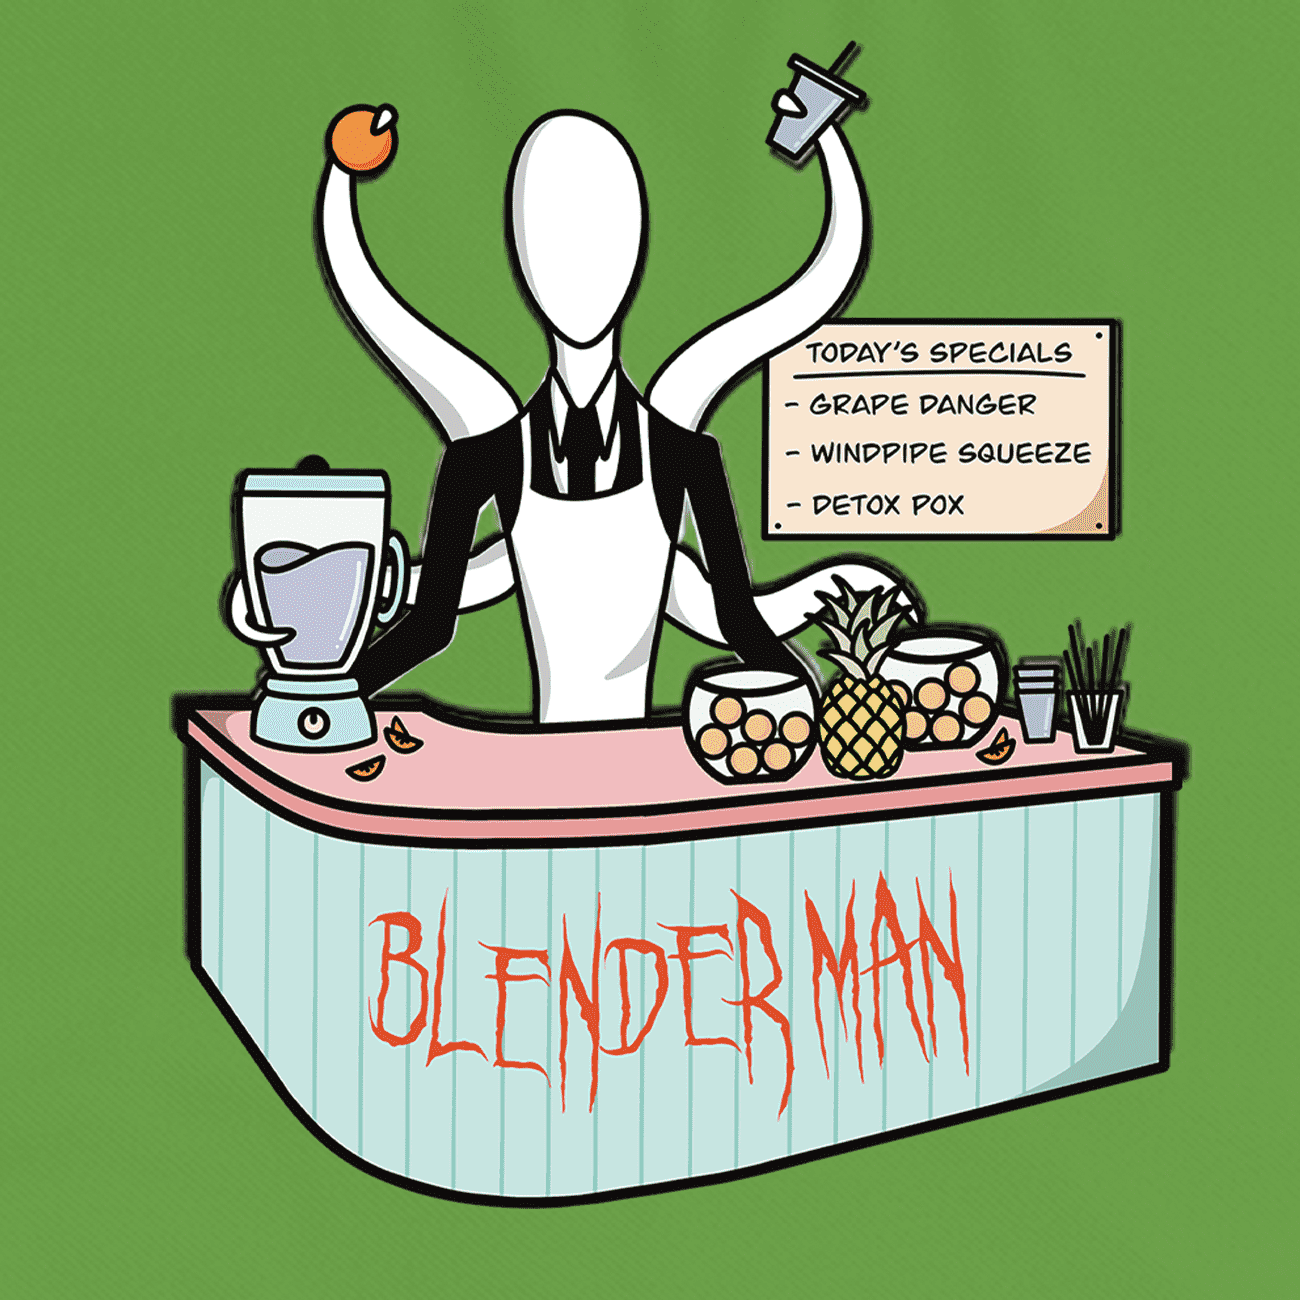 Joke horror funny take on the creepy pasta, slender man, now blender man, a juice maker.